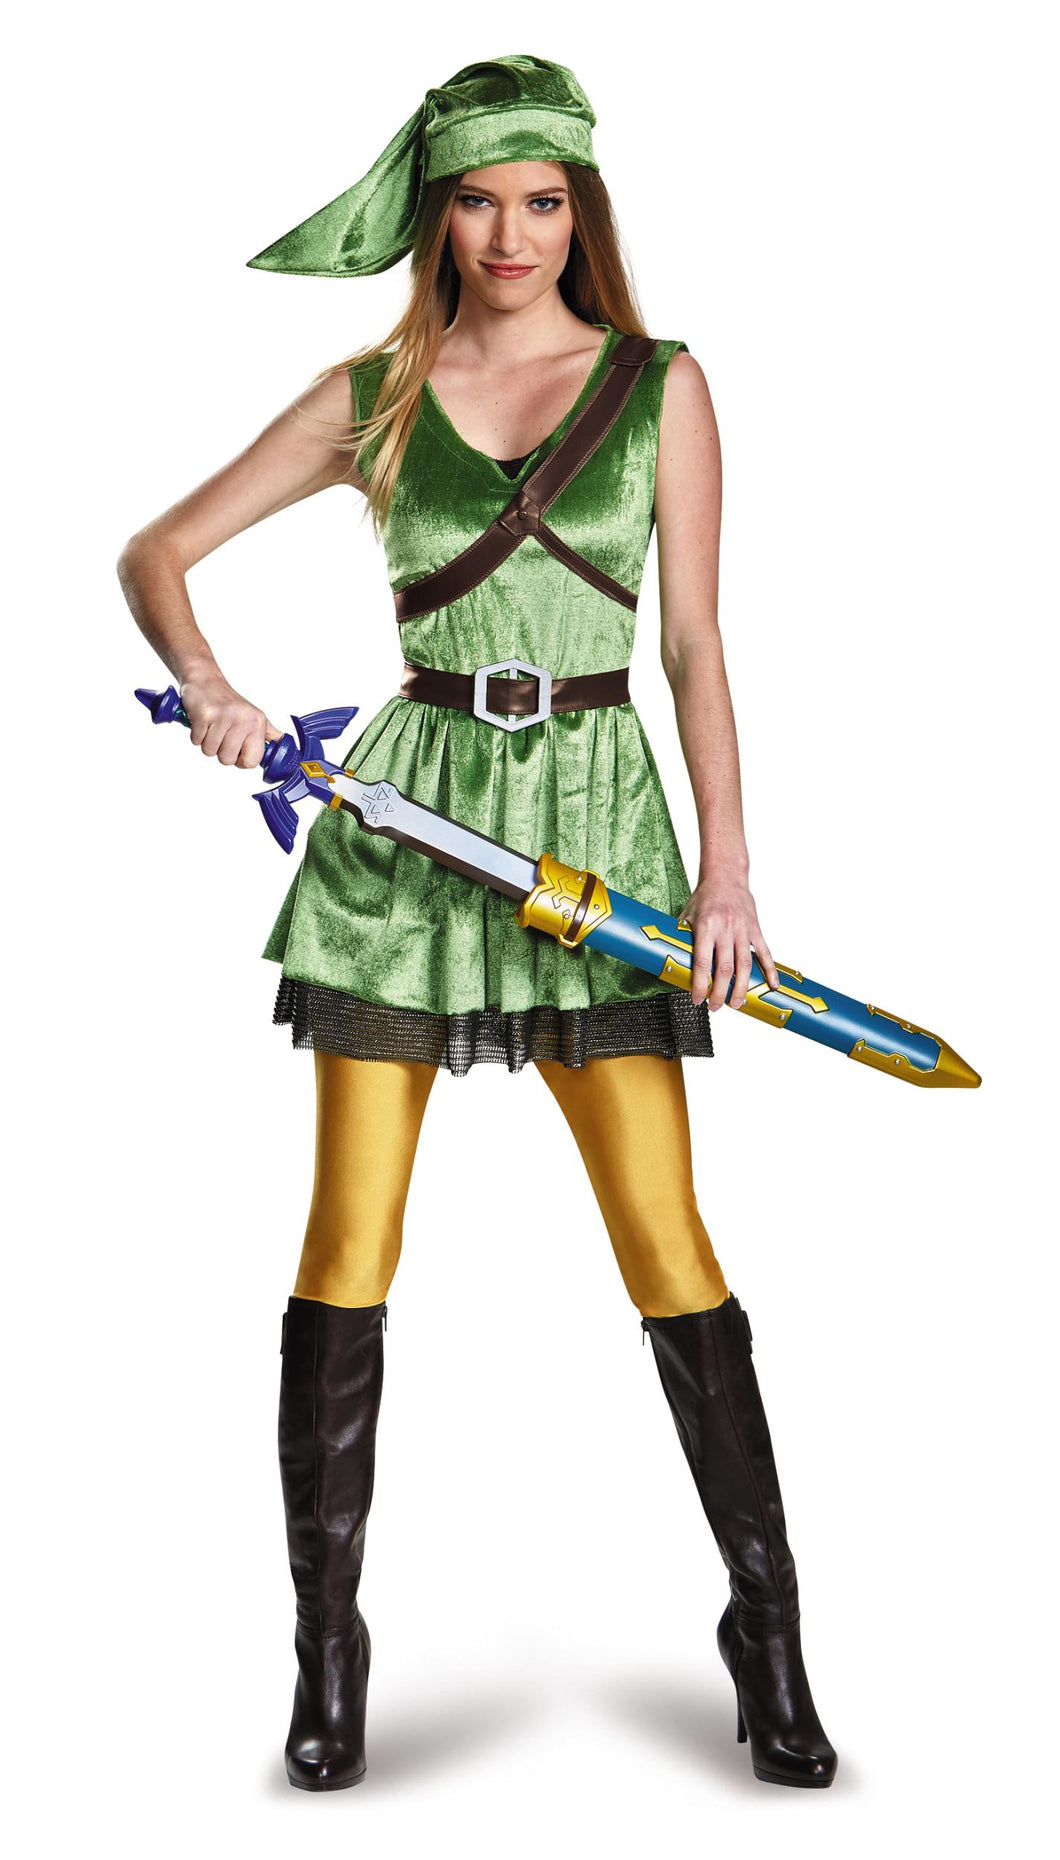 Legend of Zelda Link Female Adult Large 12-14